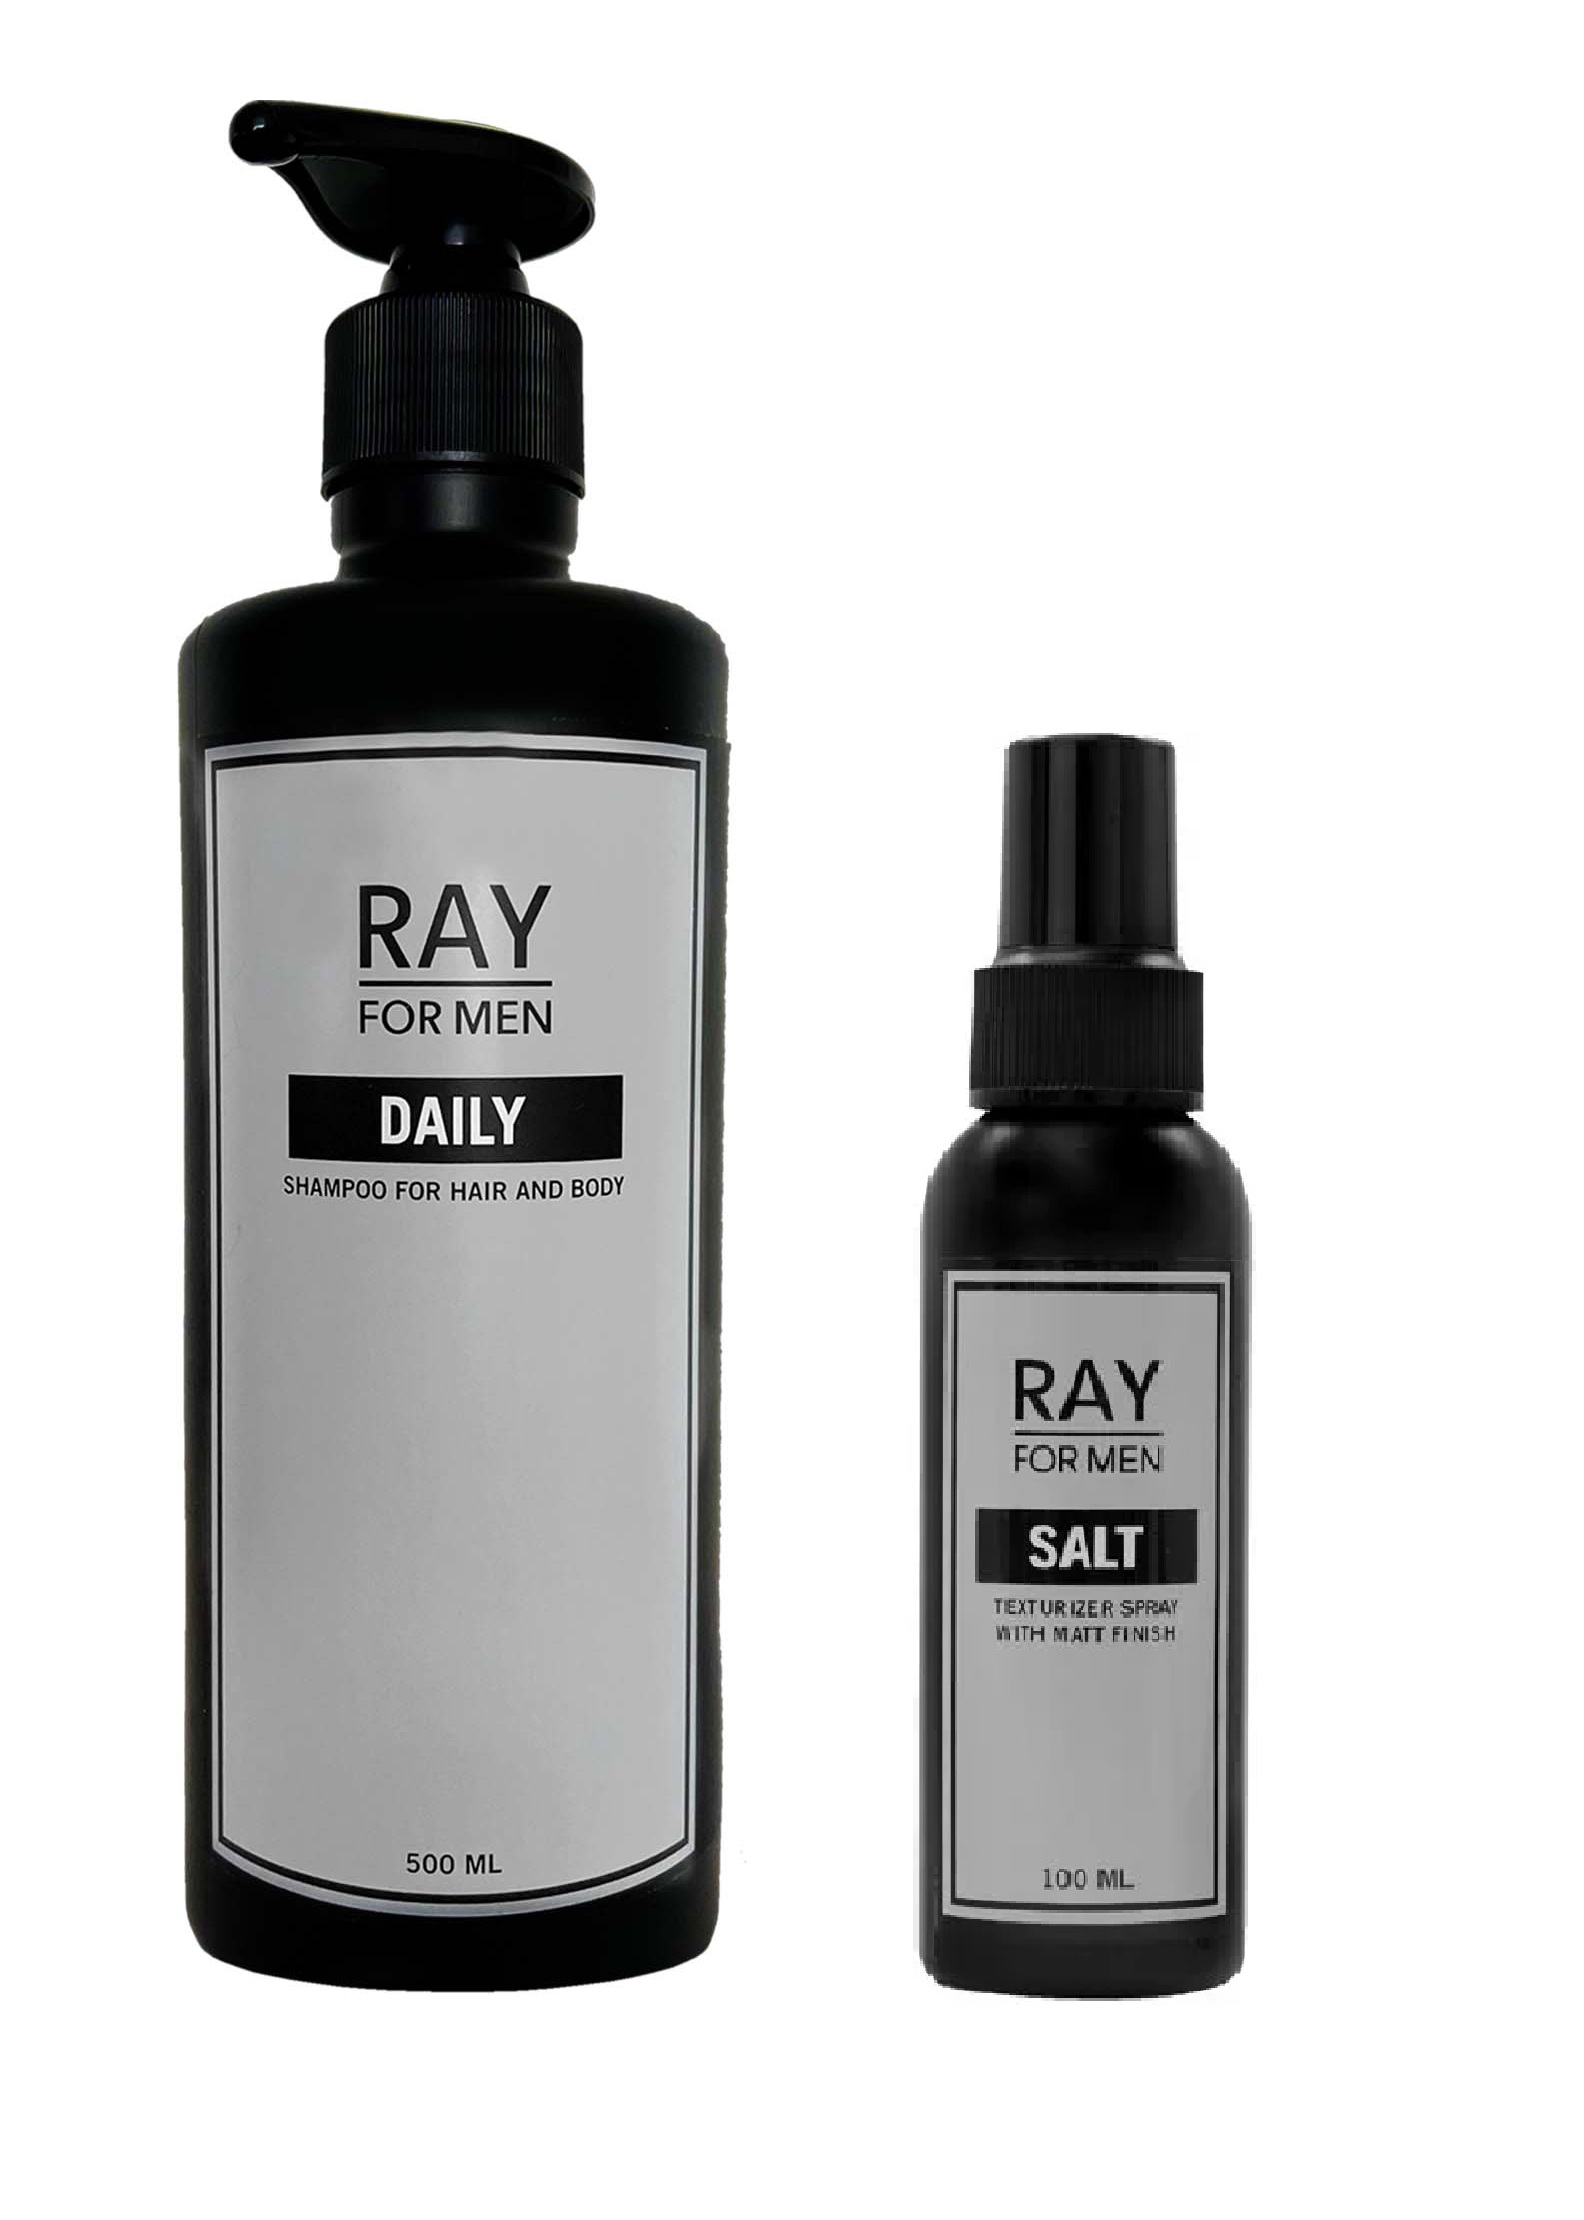 RAY FOR MEN - Daglig Hår og Krop Shampoo 500 ml + RAY FOR MEN - Salt Spray 100 ml